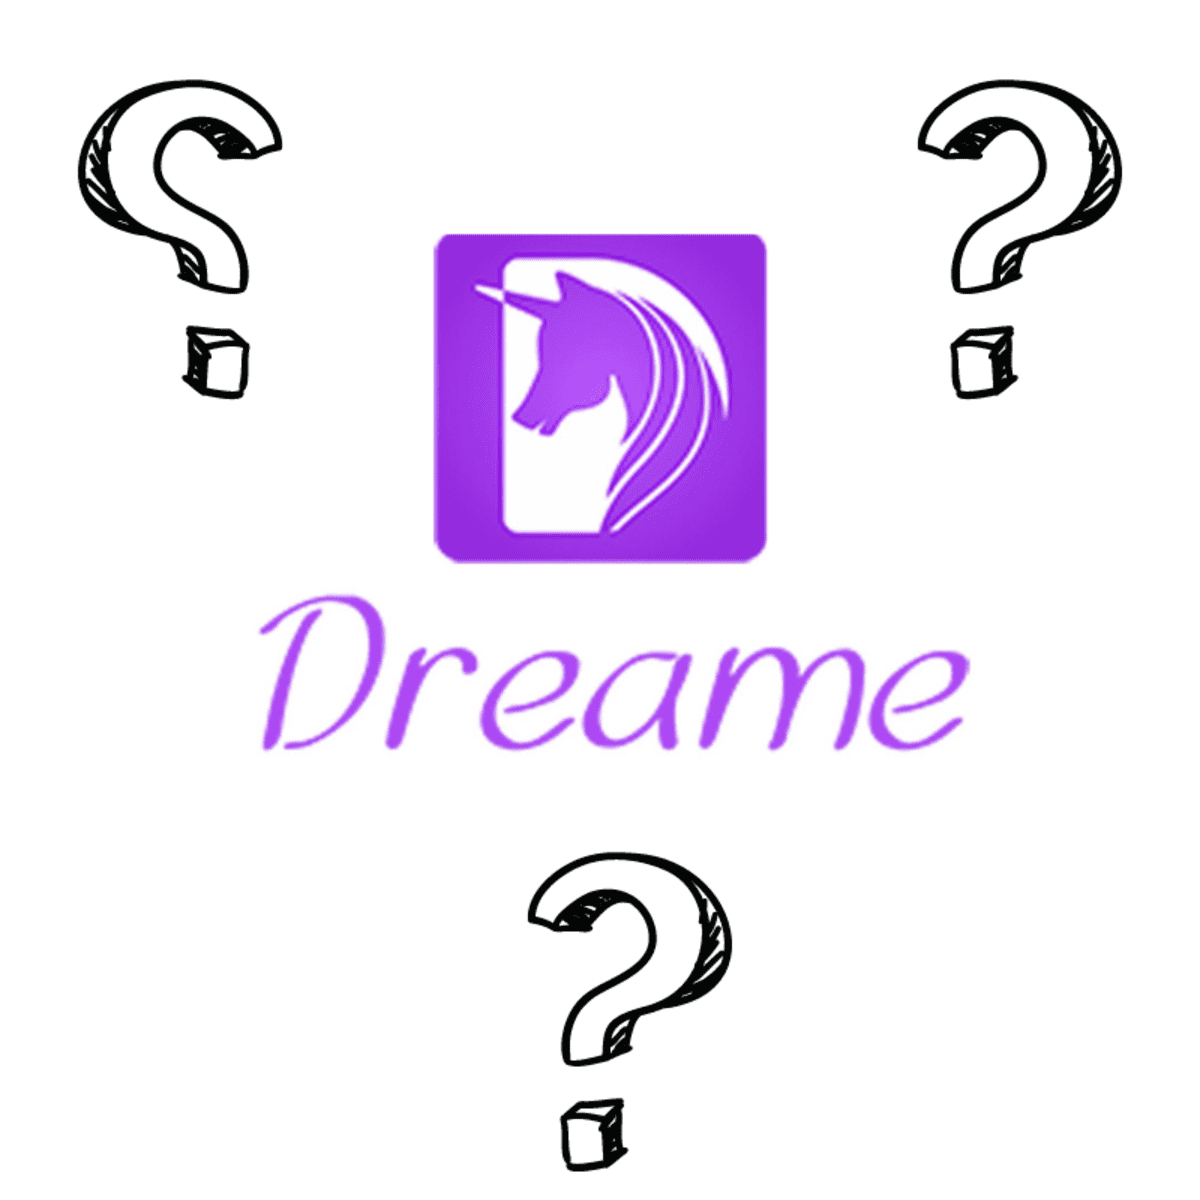 Dreame: Is It a Legit Author Platform? - TurboFuture